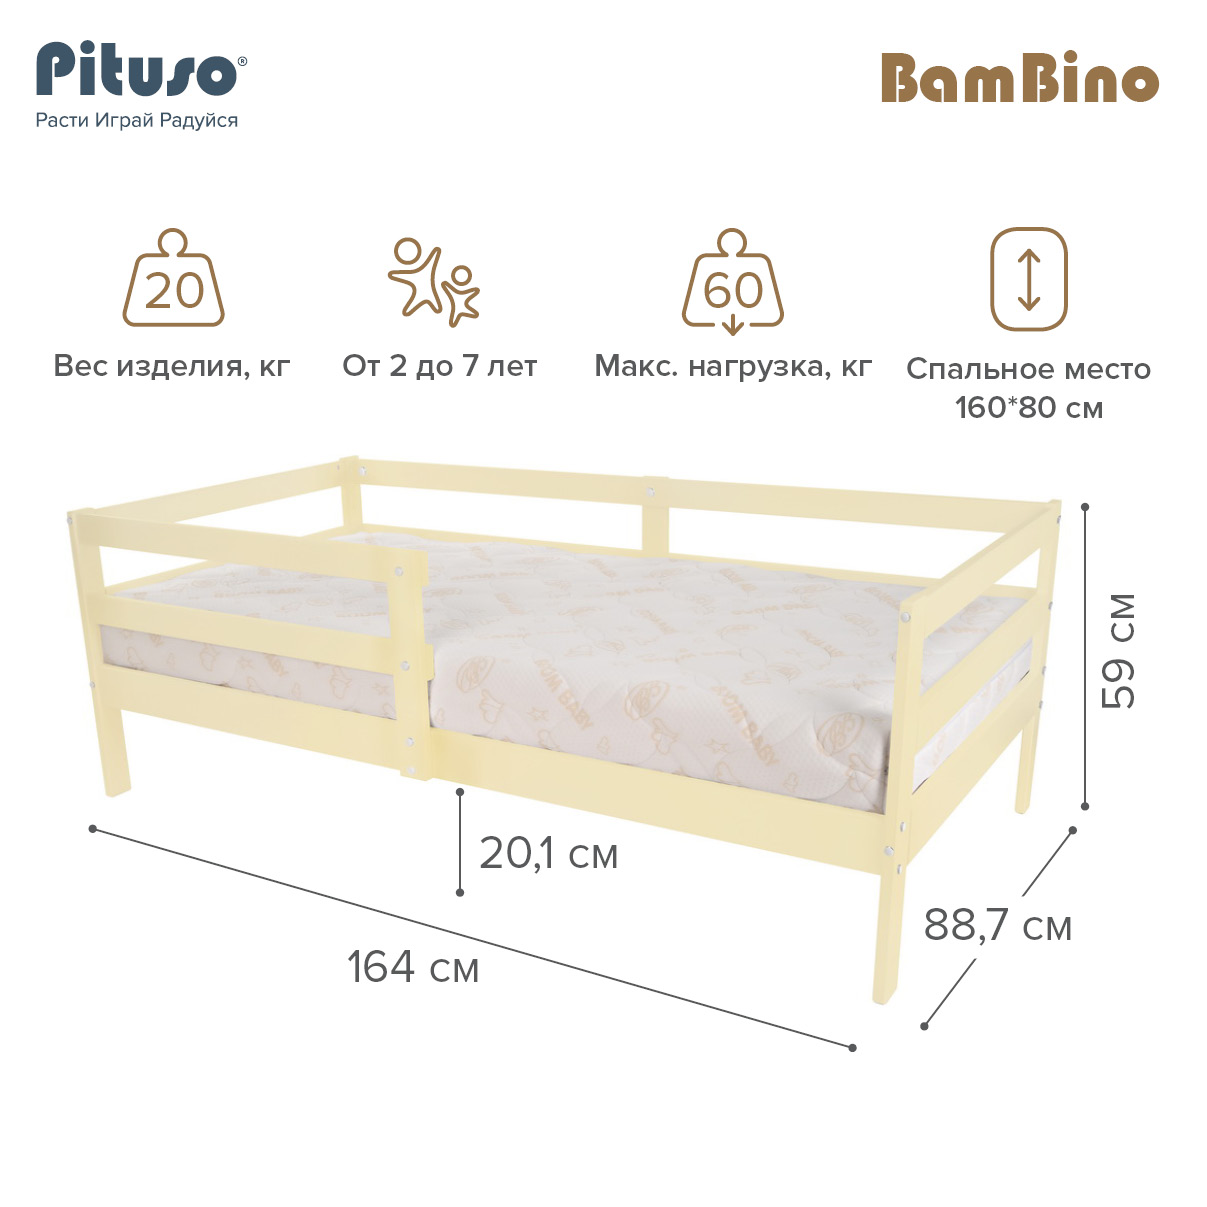 Кровать подростковая Pituso BamBino Ваниль